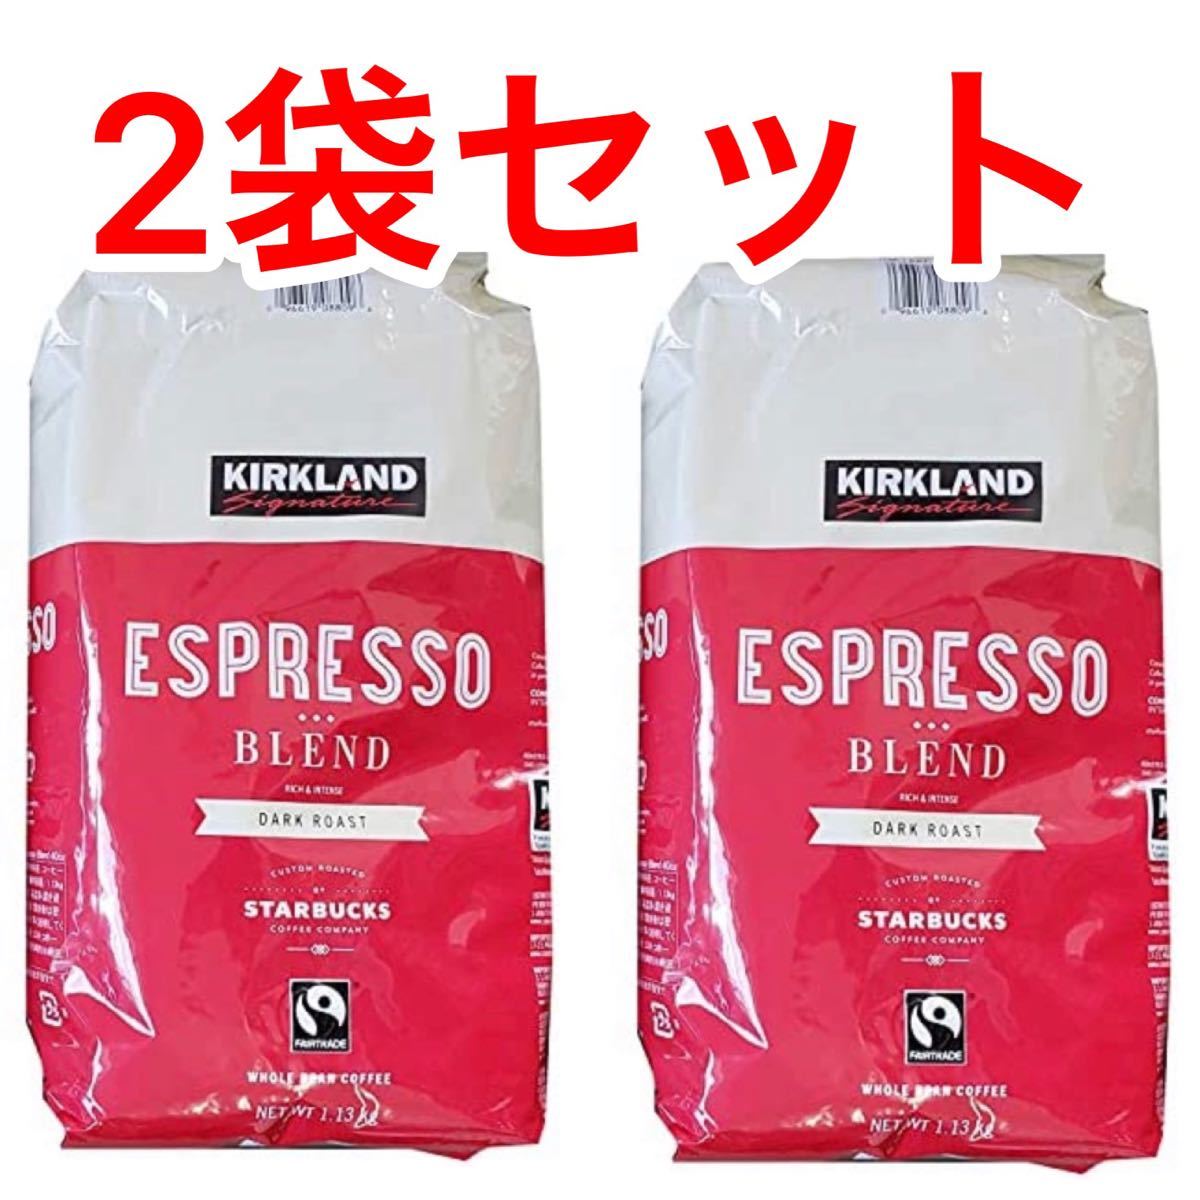 カークランド スターバックス ダークロースト エスプレッソコーヒー 1130g レギュラー(豆) 2袋セット